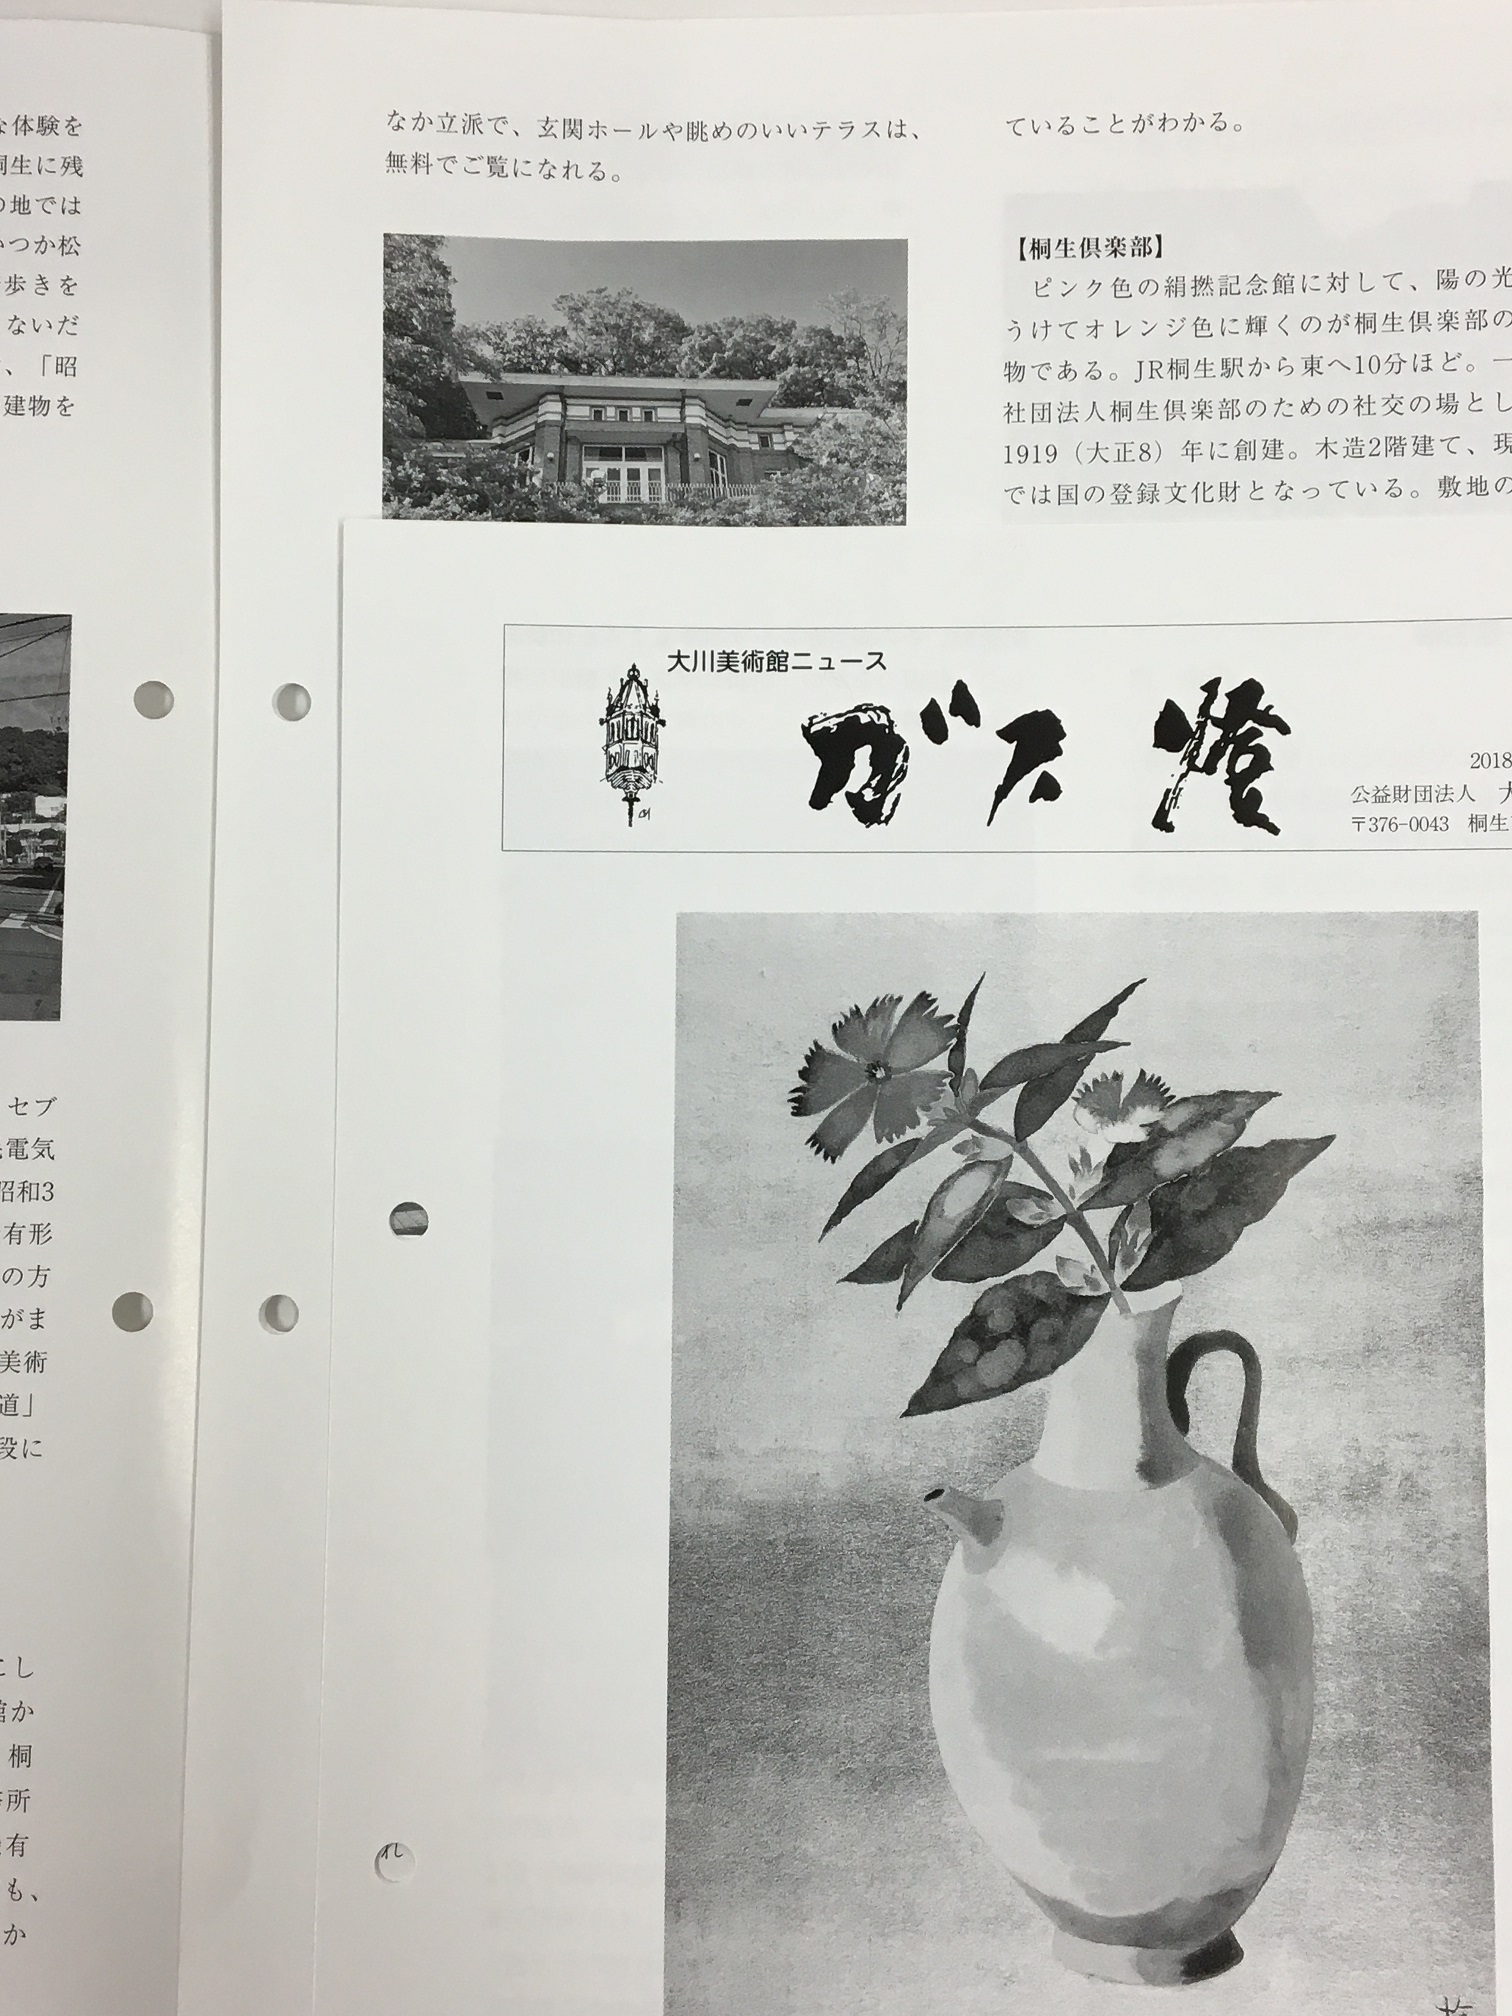 大川美術館ニュース「ガス燈」<br>第116号刊行いたしました。